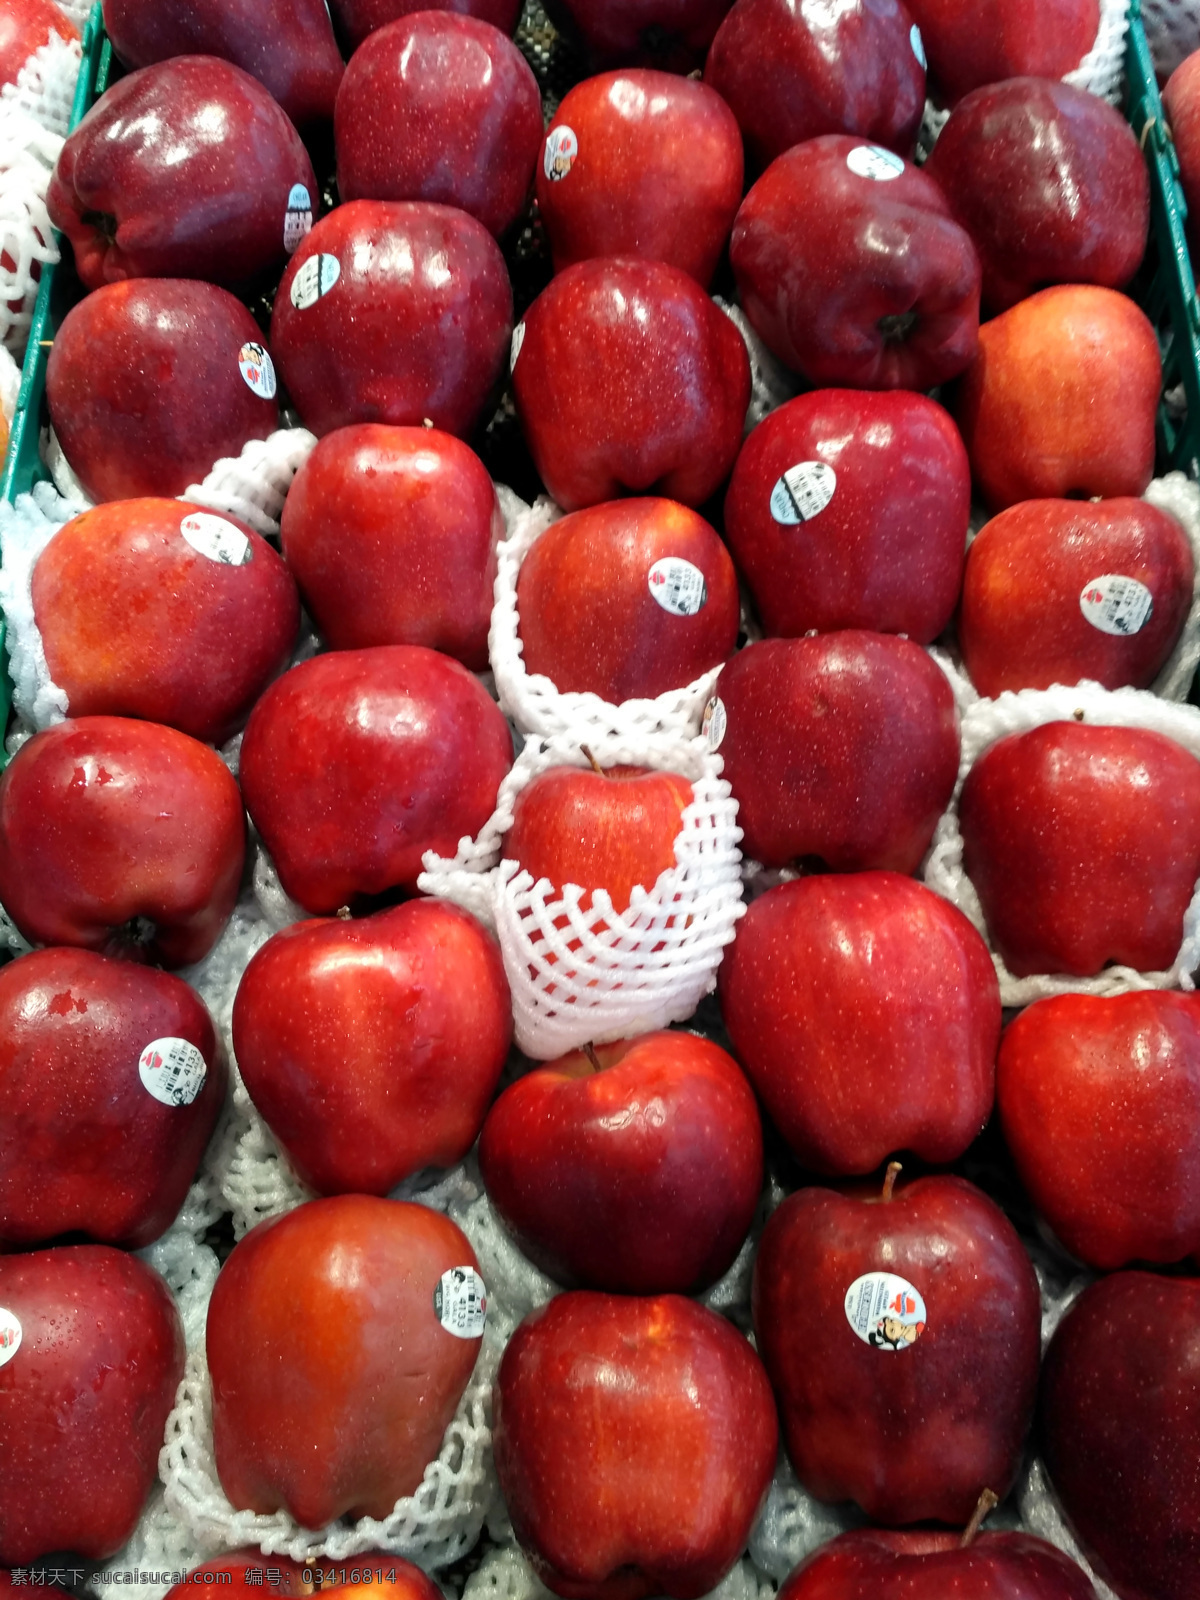 红富士 进口苹果 进口水果 蛇果 红蛇果 新鲜水果 水果 超市 货架 生鲜 蔬菜水果 水果蔬菜 蔬果 农产品 生物世界